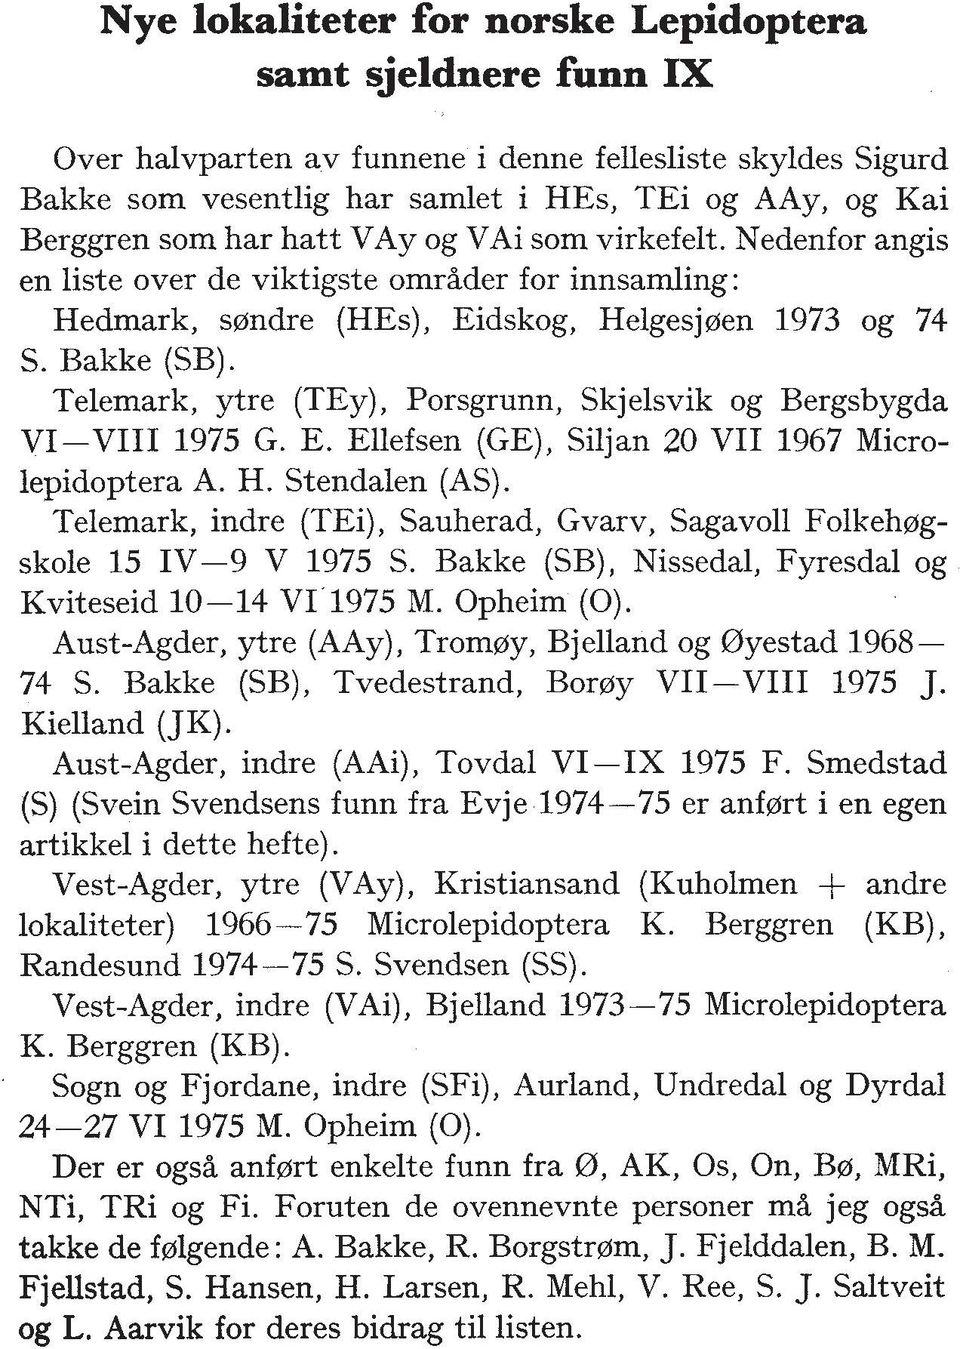 Telemark, ytre (TEy), Porsgrunn, Skjelsvik og Bergsbygda VI-VIII 1975 G. E. Ellefsen (GE), Siljan 20 VII 1967 Microlepidoptera A. H. Stendalen (AS).